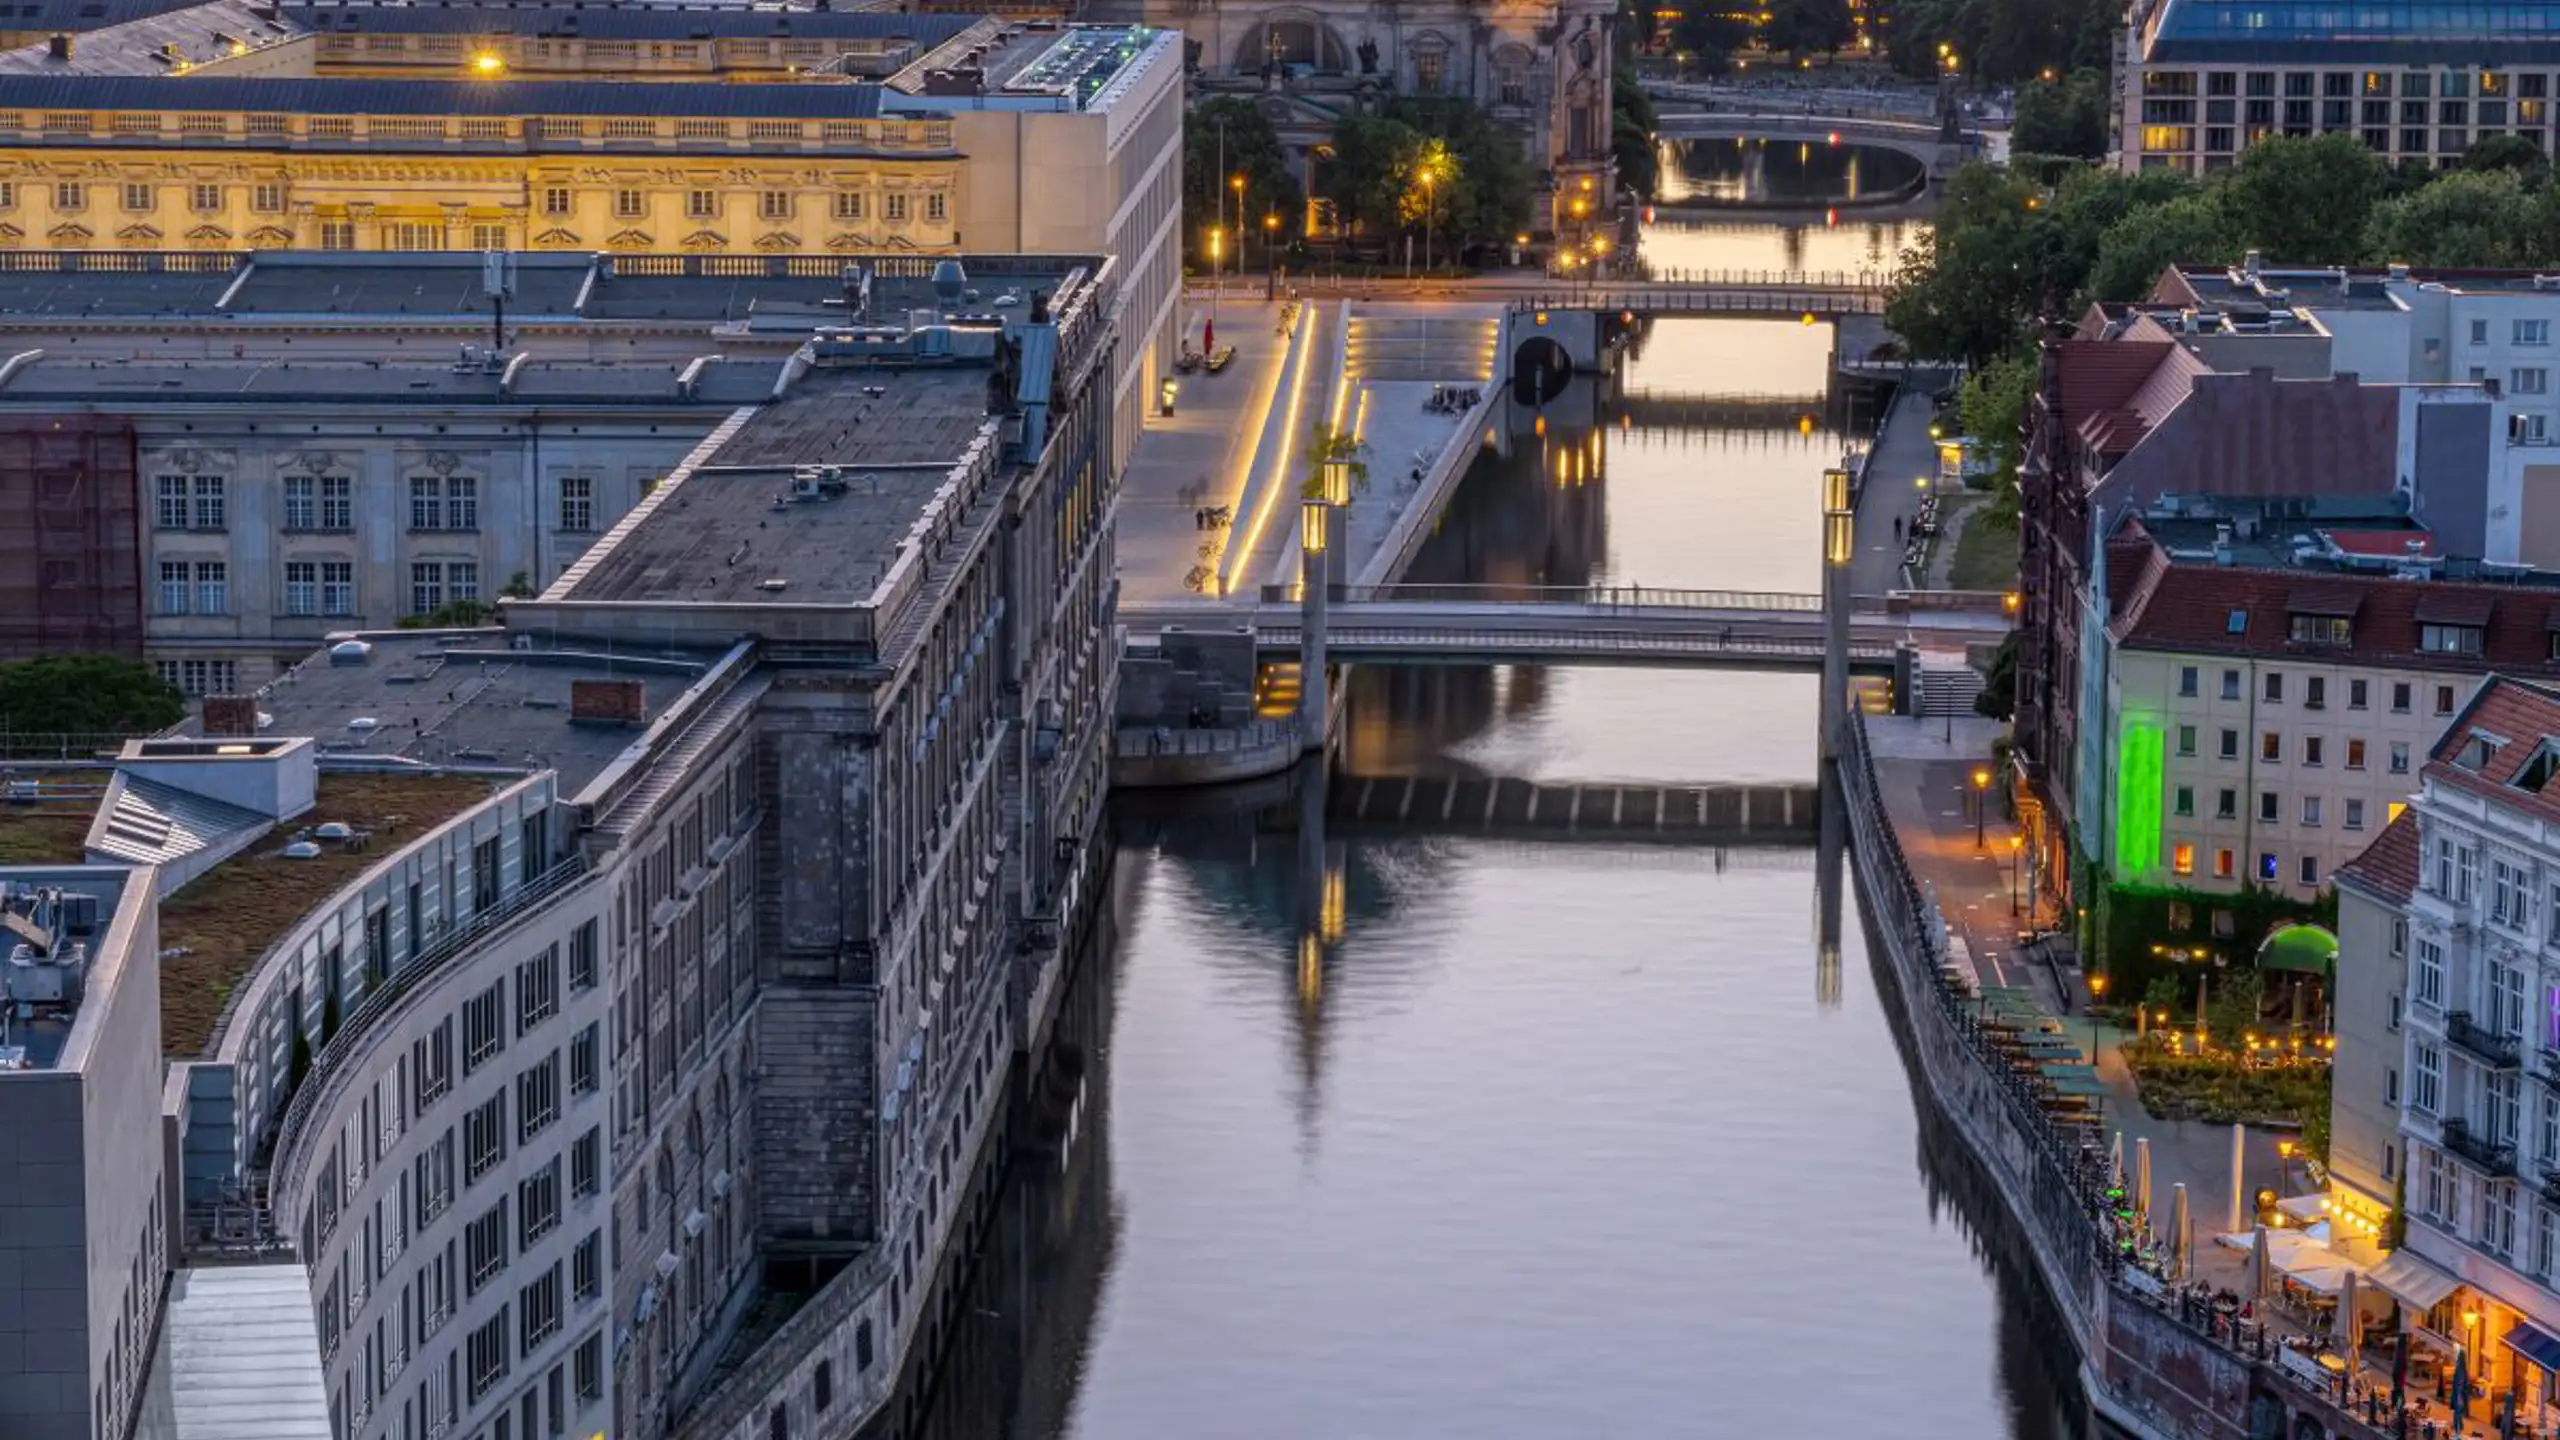 Sunset At The River Spree In Berlin 2023 11 27 04 55 11 Utc